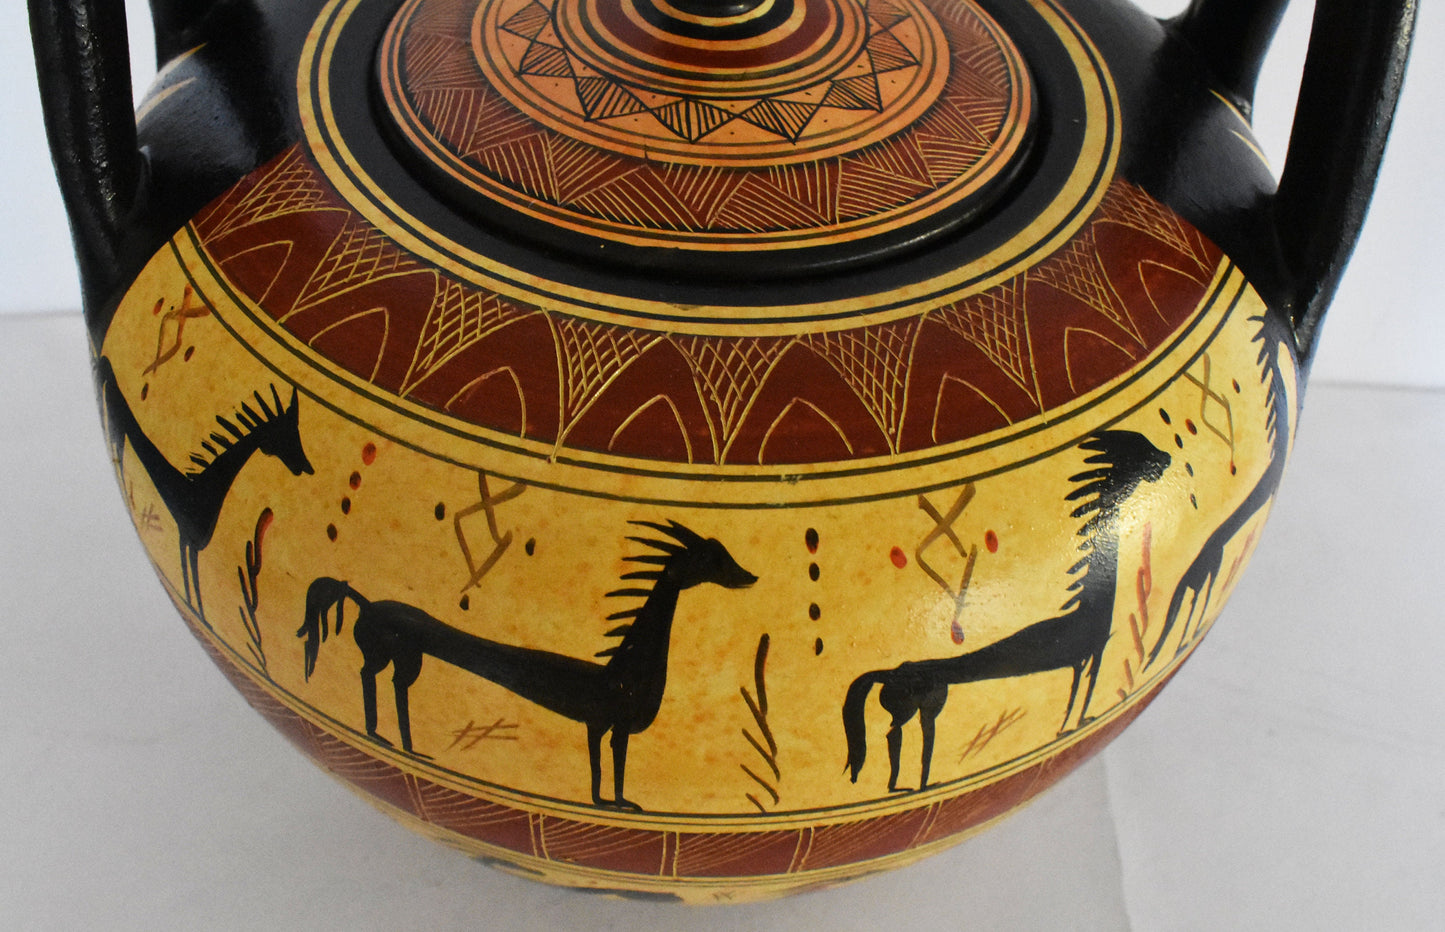 Geometric period Vessel - Animals and Meander Design - Ceramic Vase